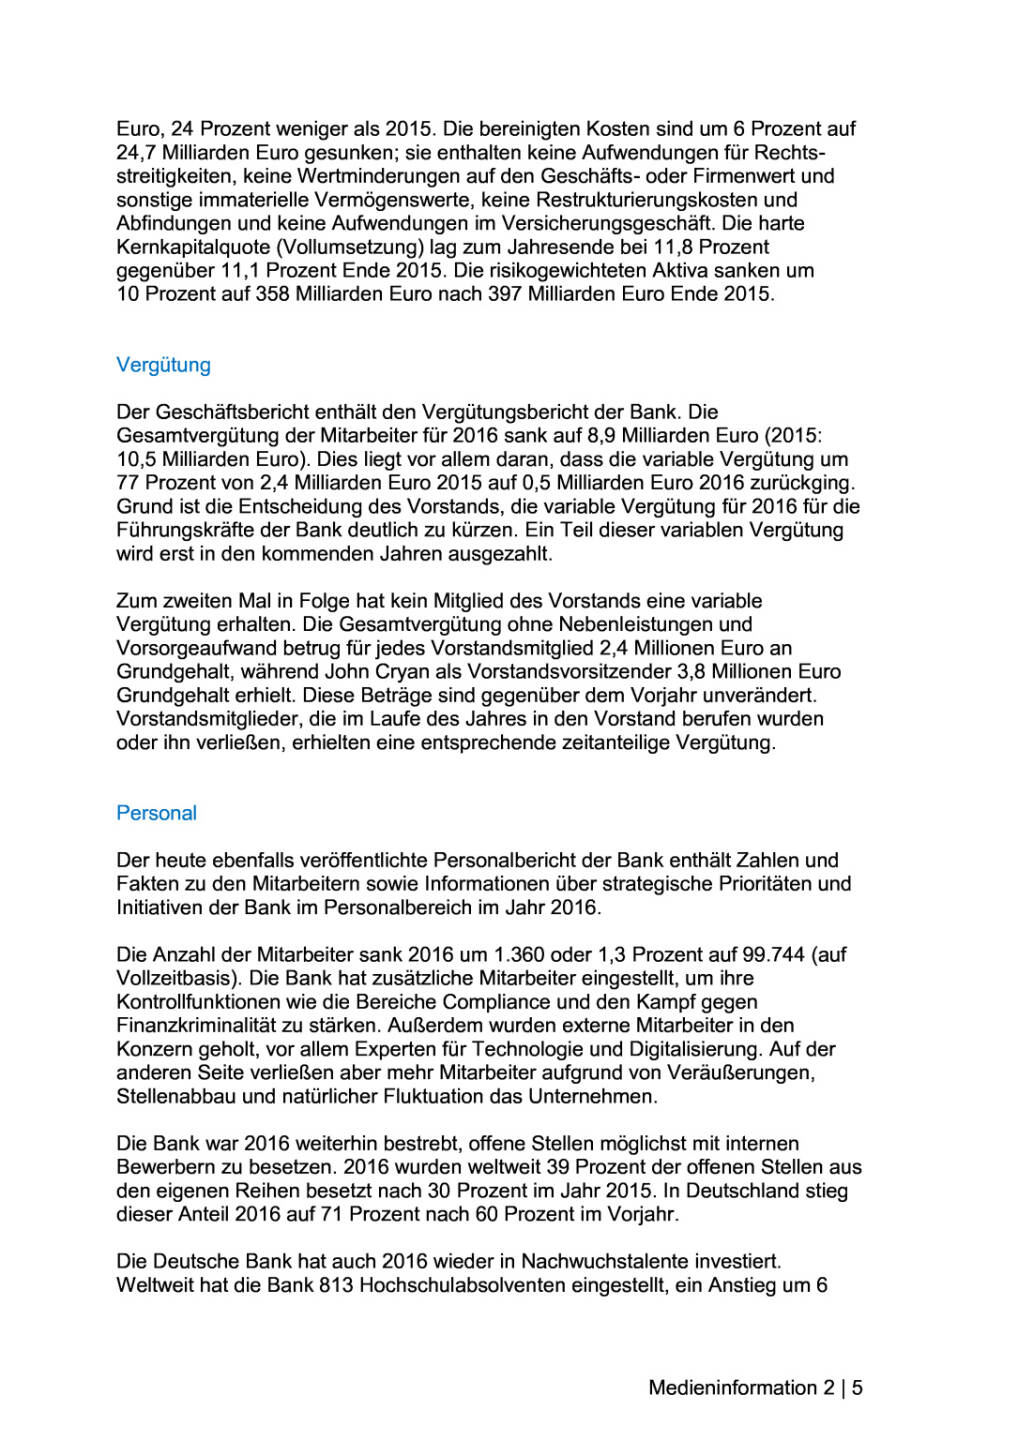 Deutsche Bank veröffentlicht Geschäftsbericht 2016, Seite 2/5, komplettes Dokument unter http://boerse-social.com/static/uploads/file_2167_deutsche_bank_veroffentlicht_geschaftsbericht_2016.pdf